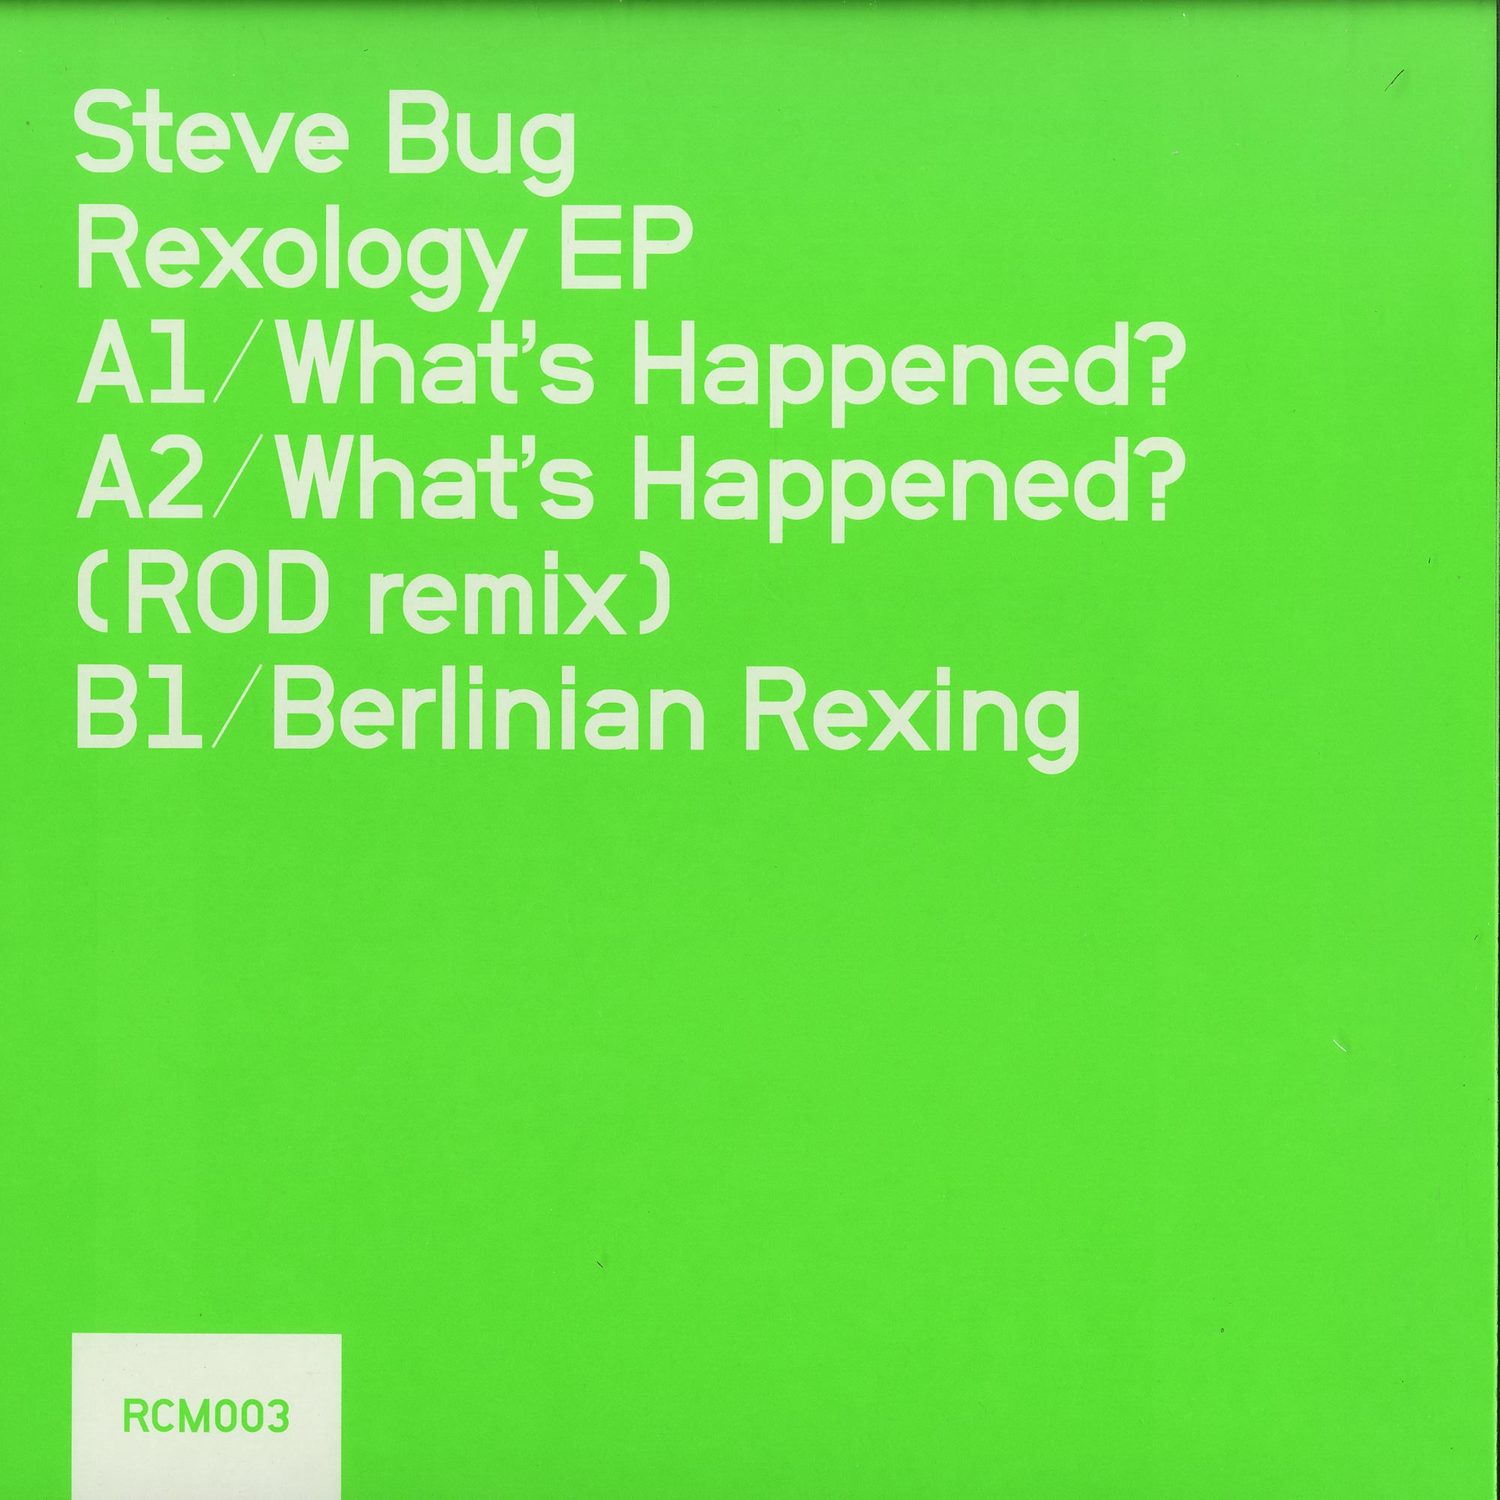 Steve Bug - REXOLOGY / ROD REMIX